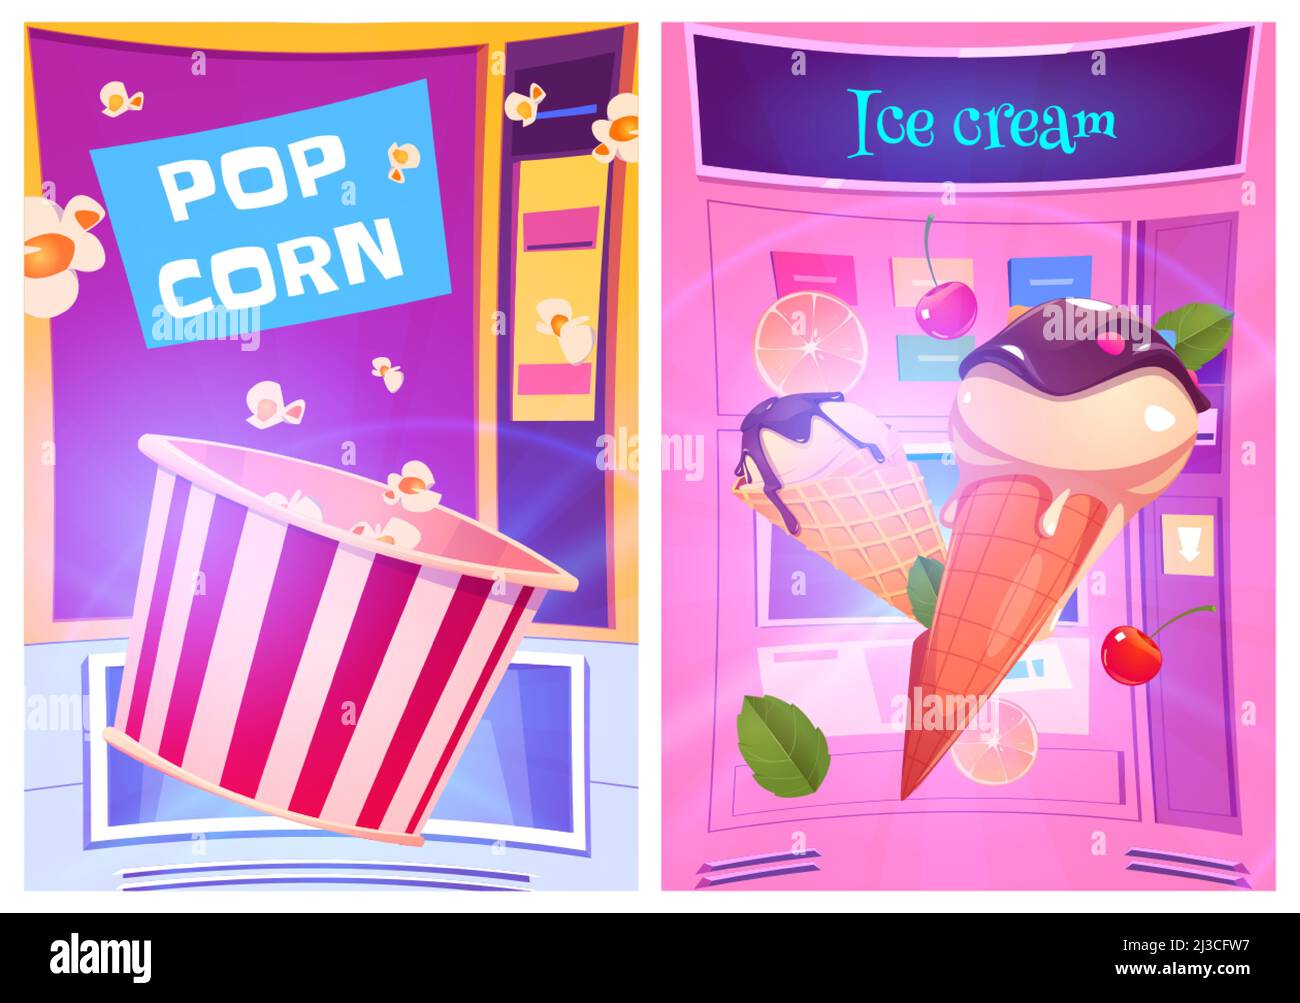 Pop corn e gelati snack presso distributori automatici cartoon ad poster. Negozio di dolci dolci, vendita al dettaglio di prodotti, stand automatizzati con slot Illustrazione Vettoriale